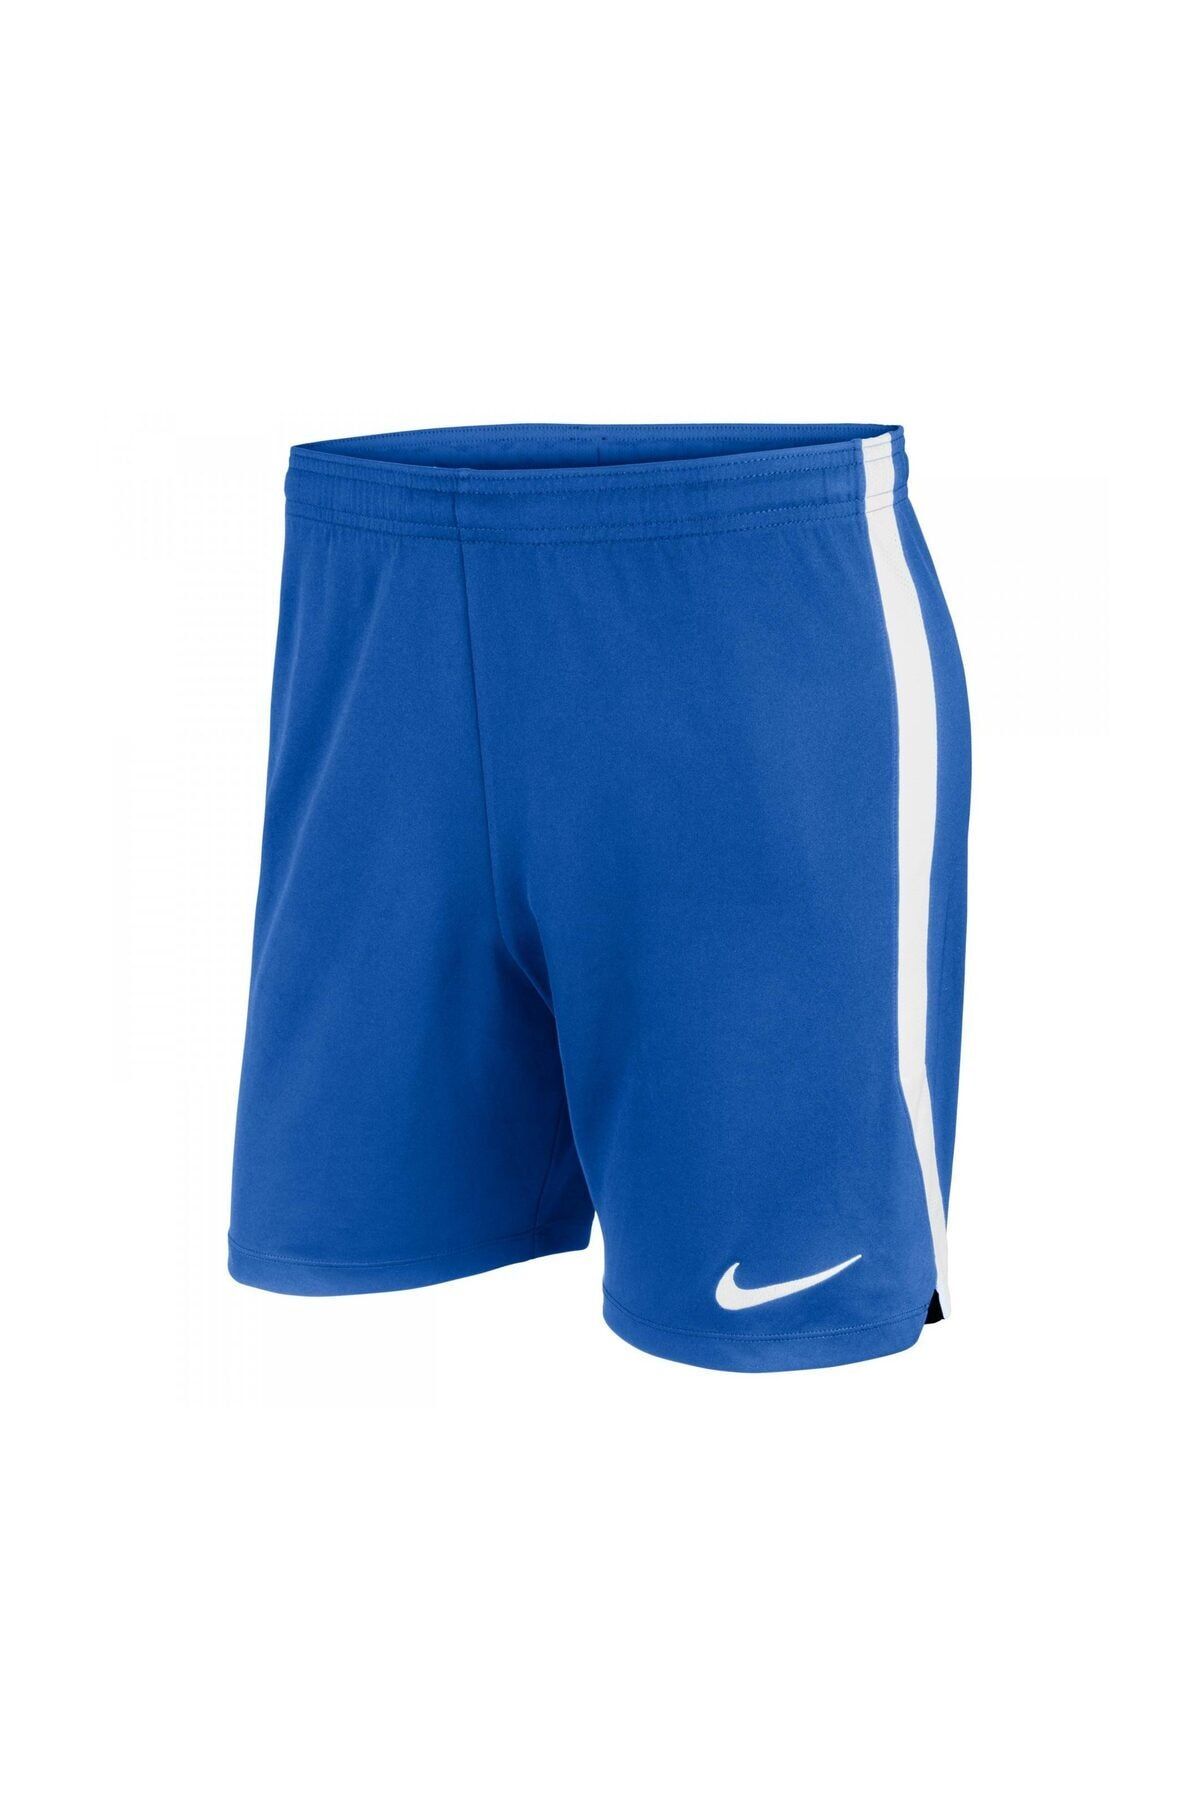 Nike Dry Hertha II Classic Short